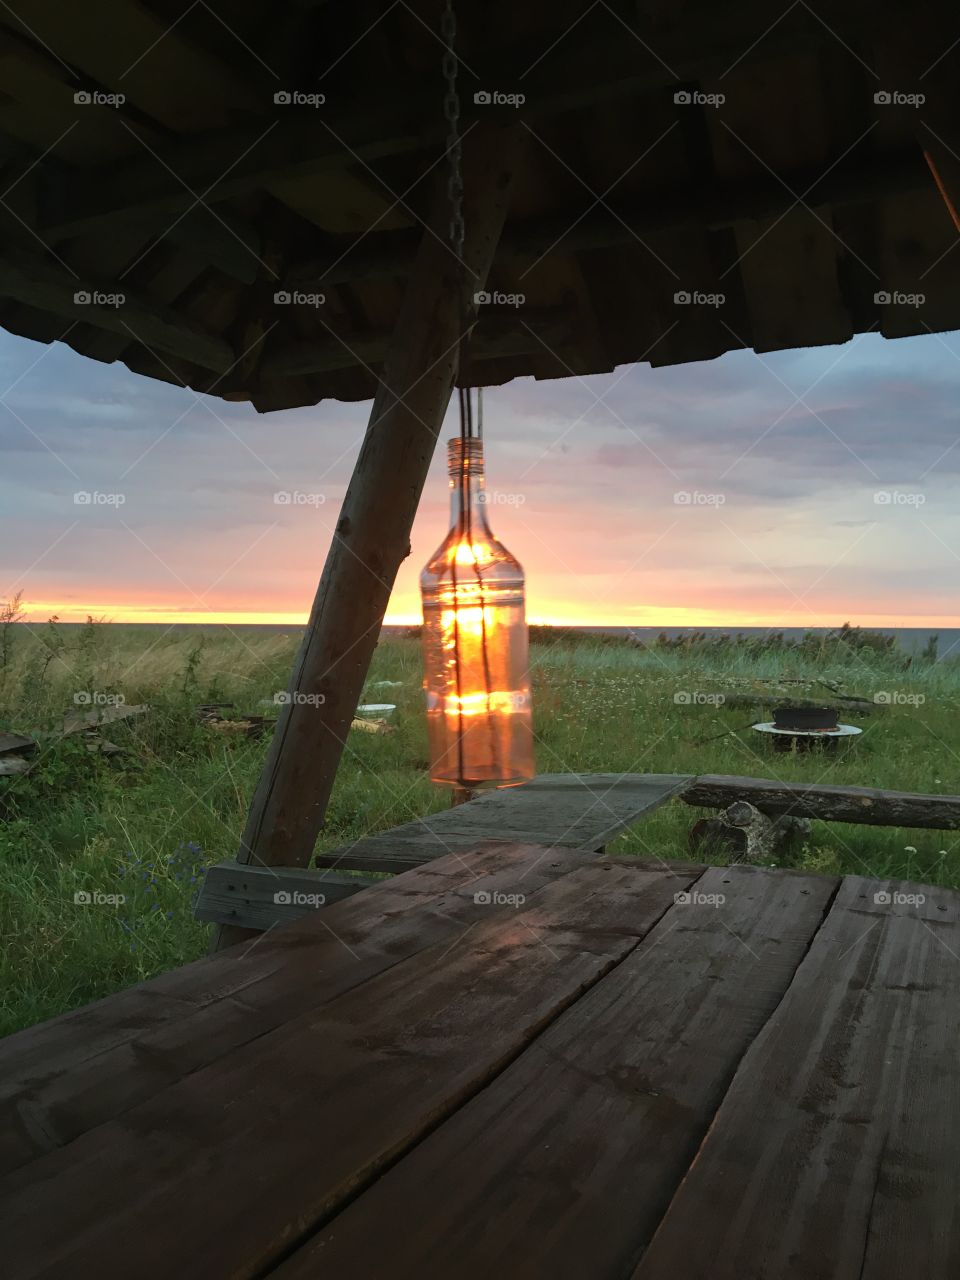 Light in the bottle